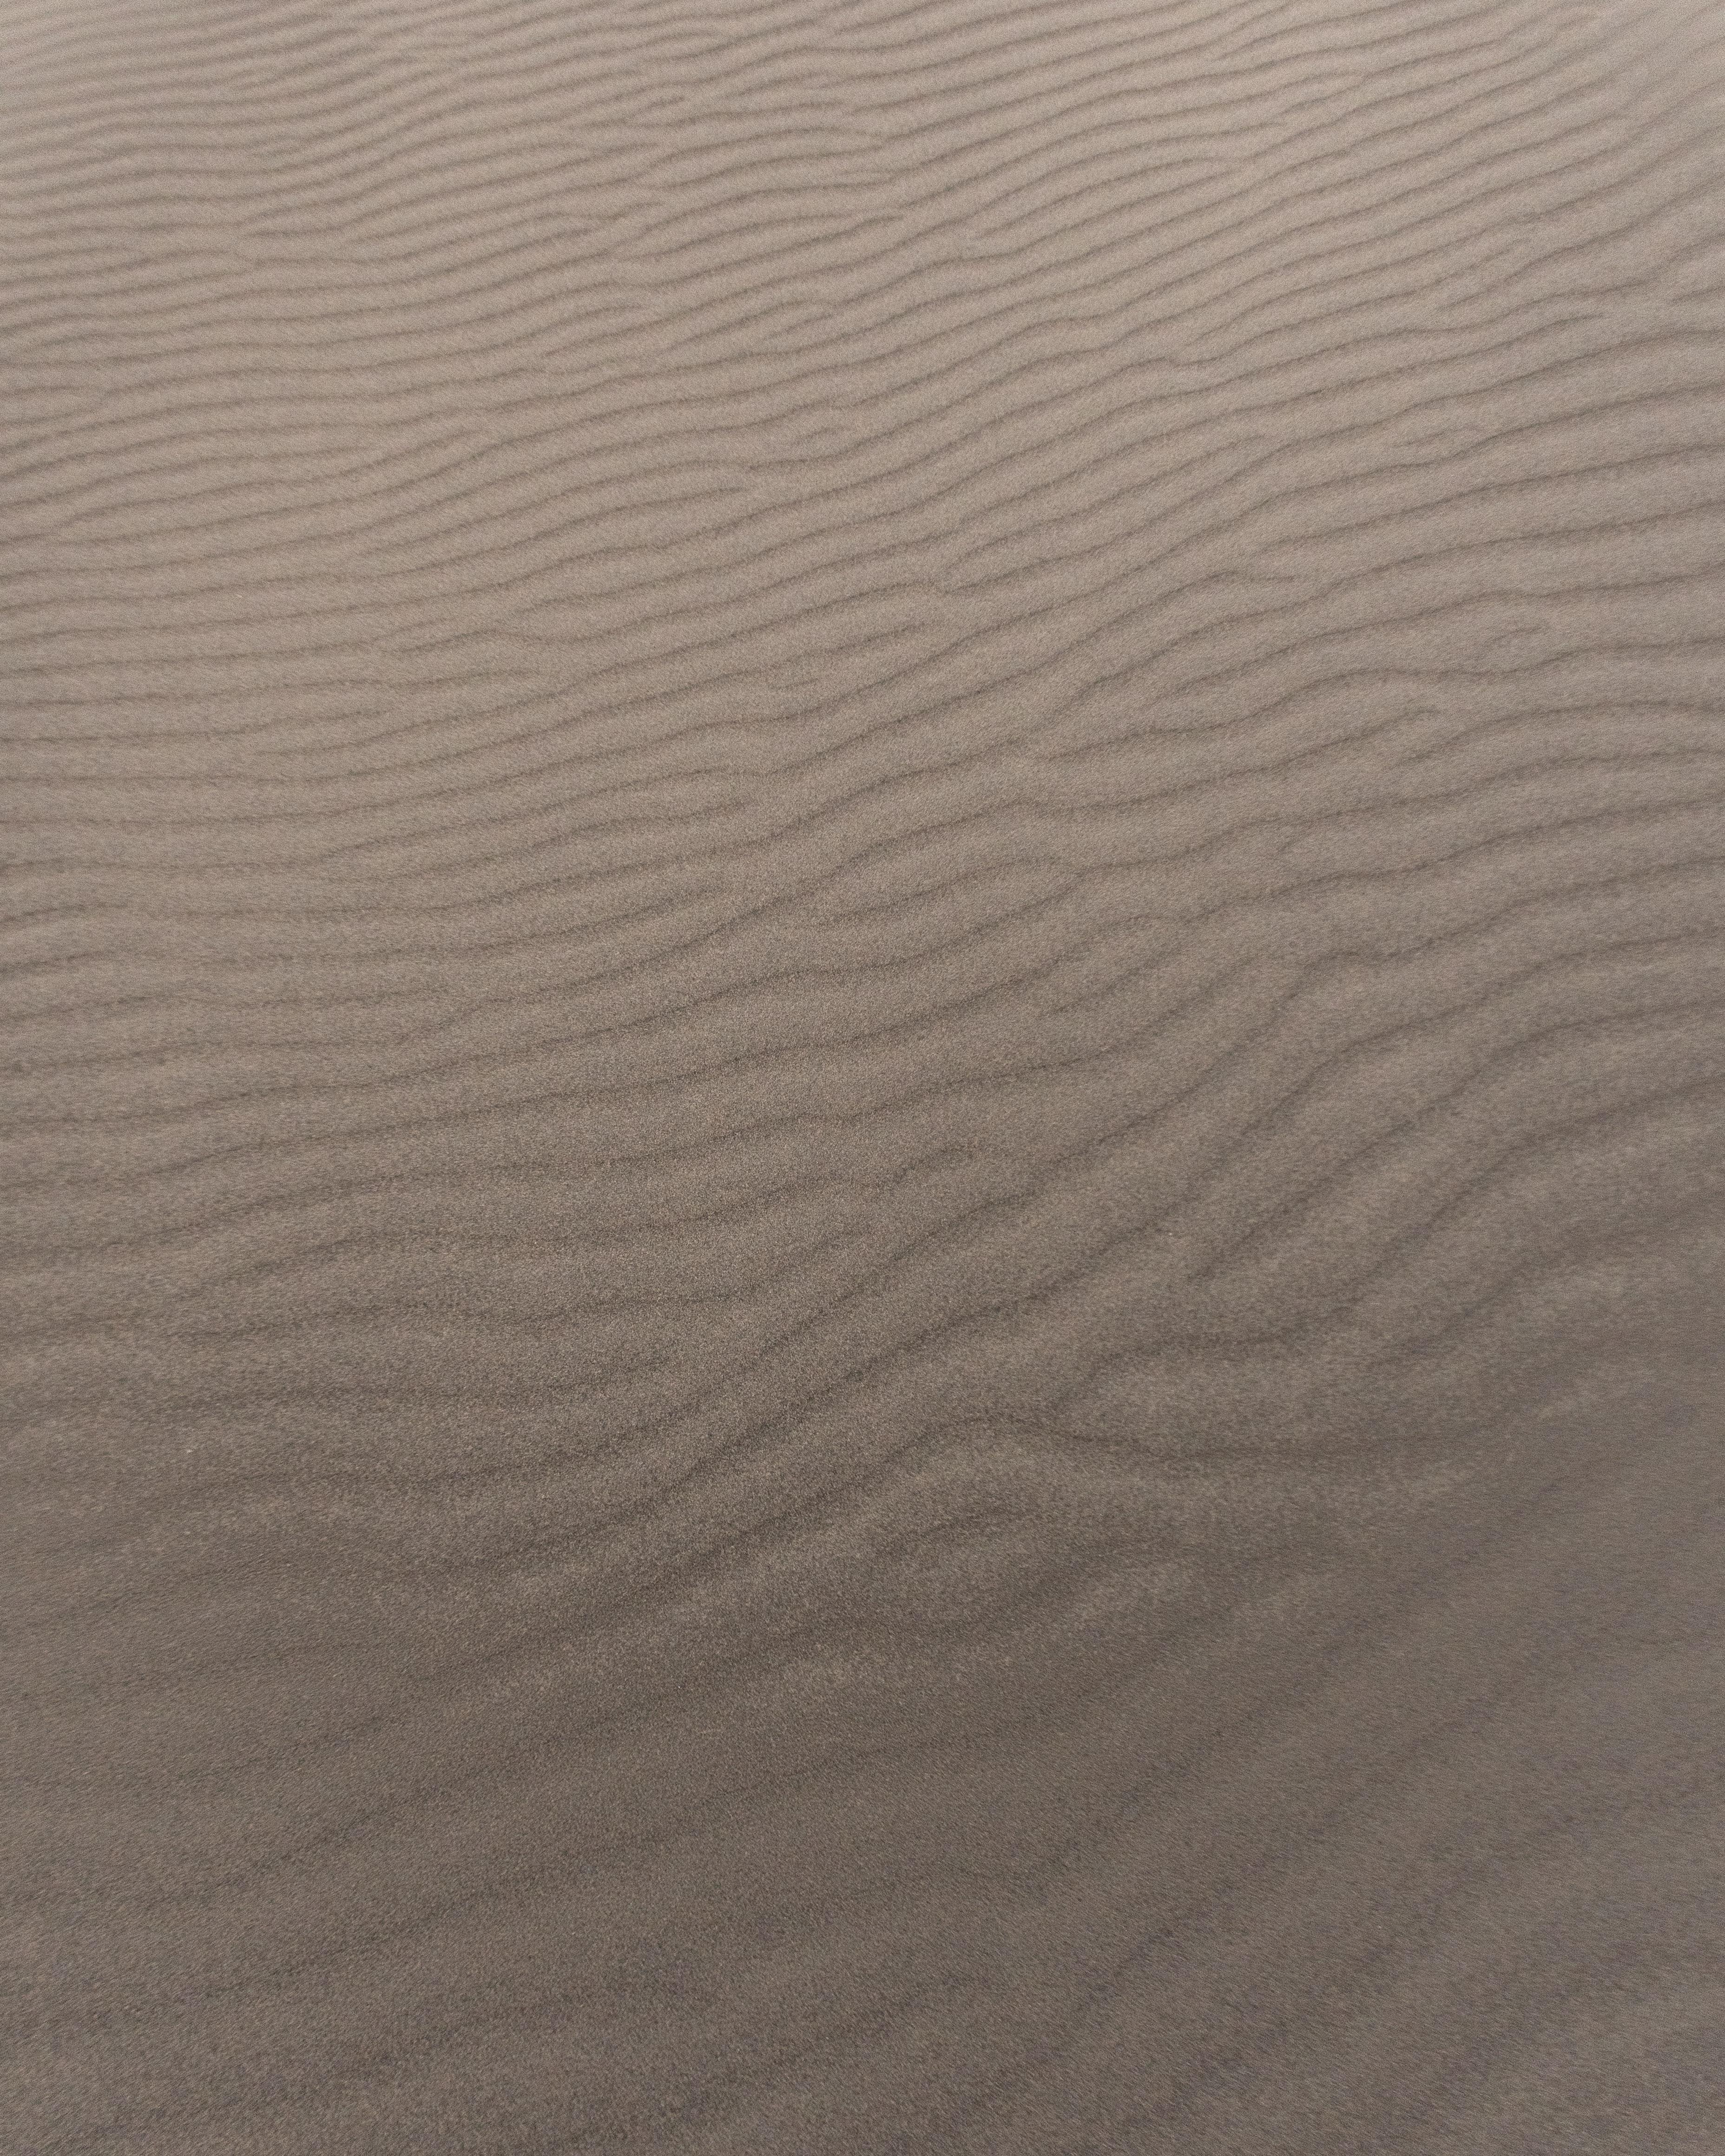 waves, sand, desert, texture, textures, stripes, streaks desktop HD wallpaper